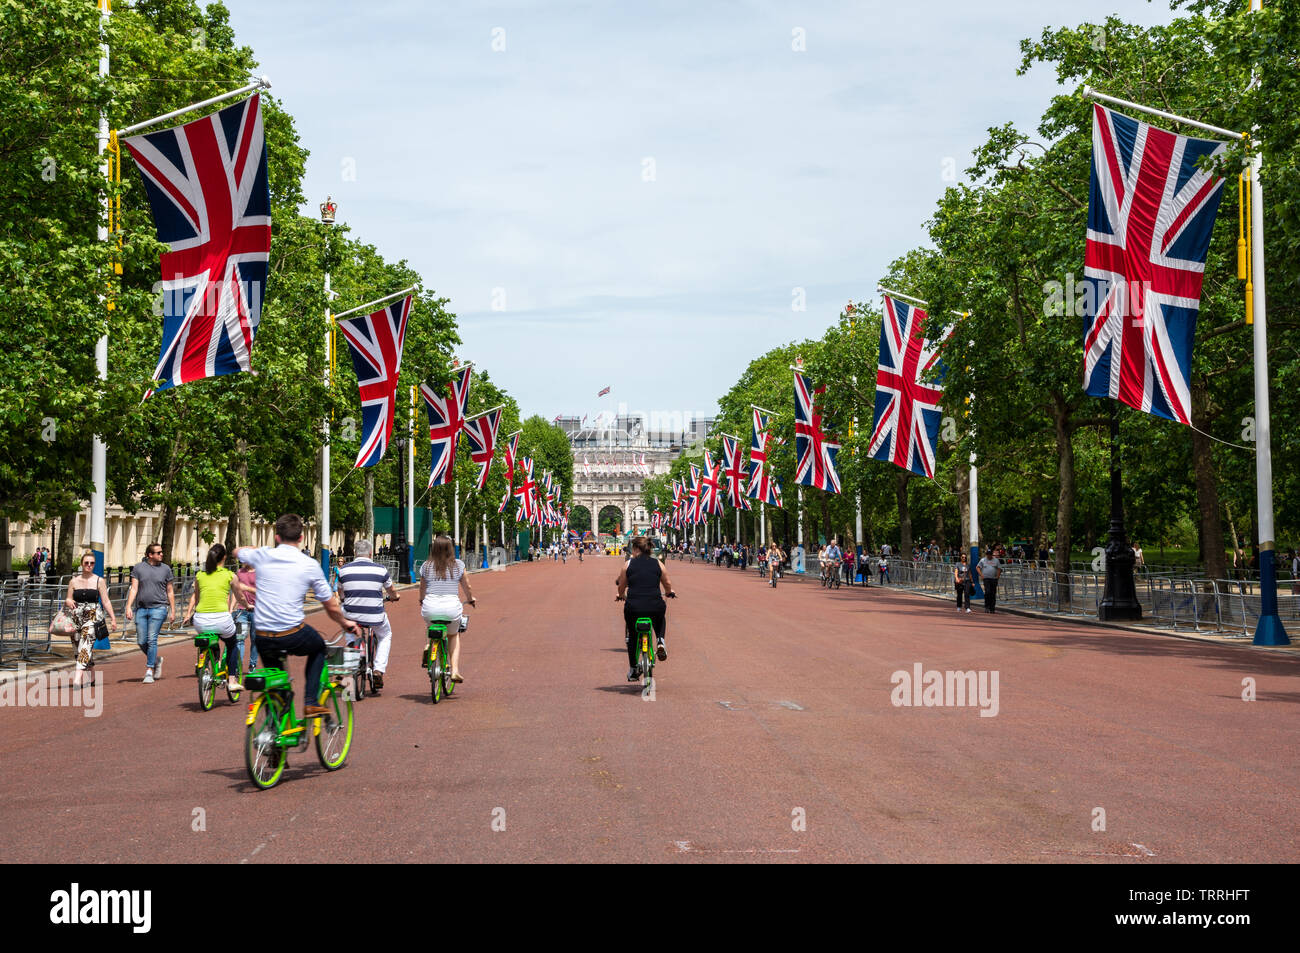 London, England, UK - Juni 1, 2019: Touristen fahren elektrische Fahrräder entlang der Mall in Central London, mit Union Jack Fahnen fliegen. Stockfoto